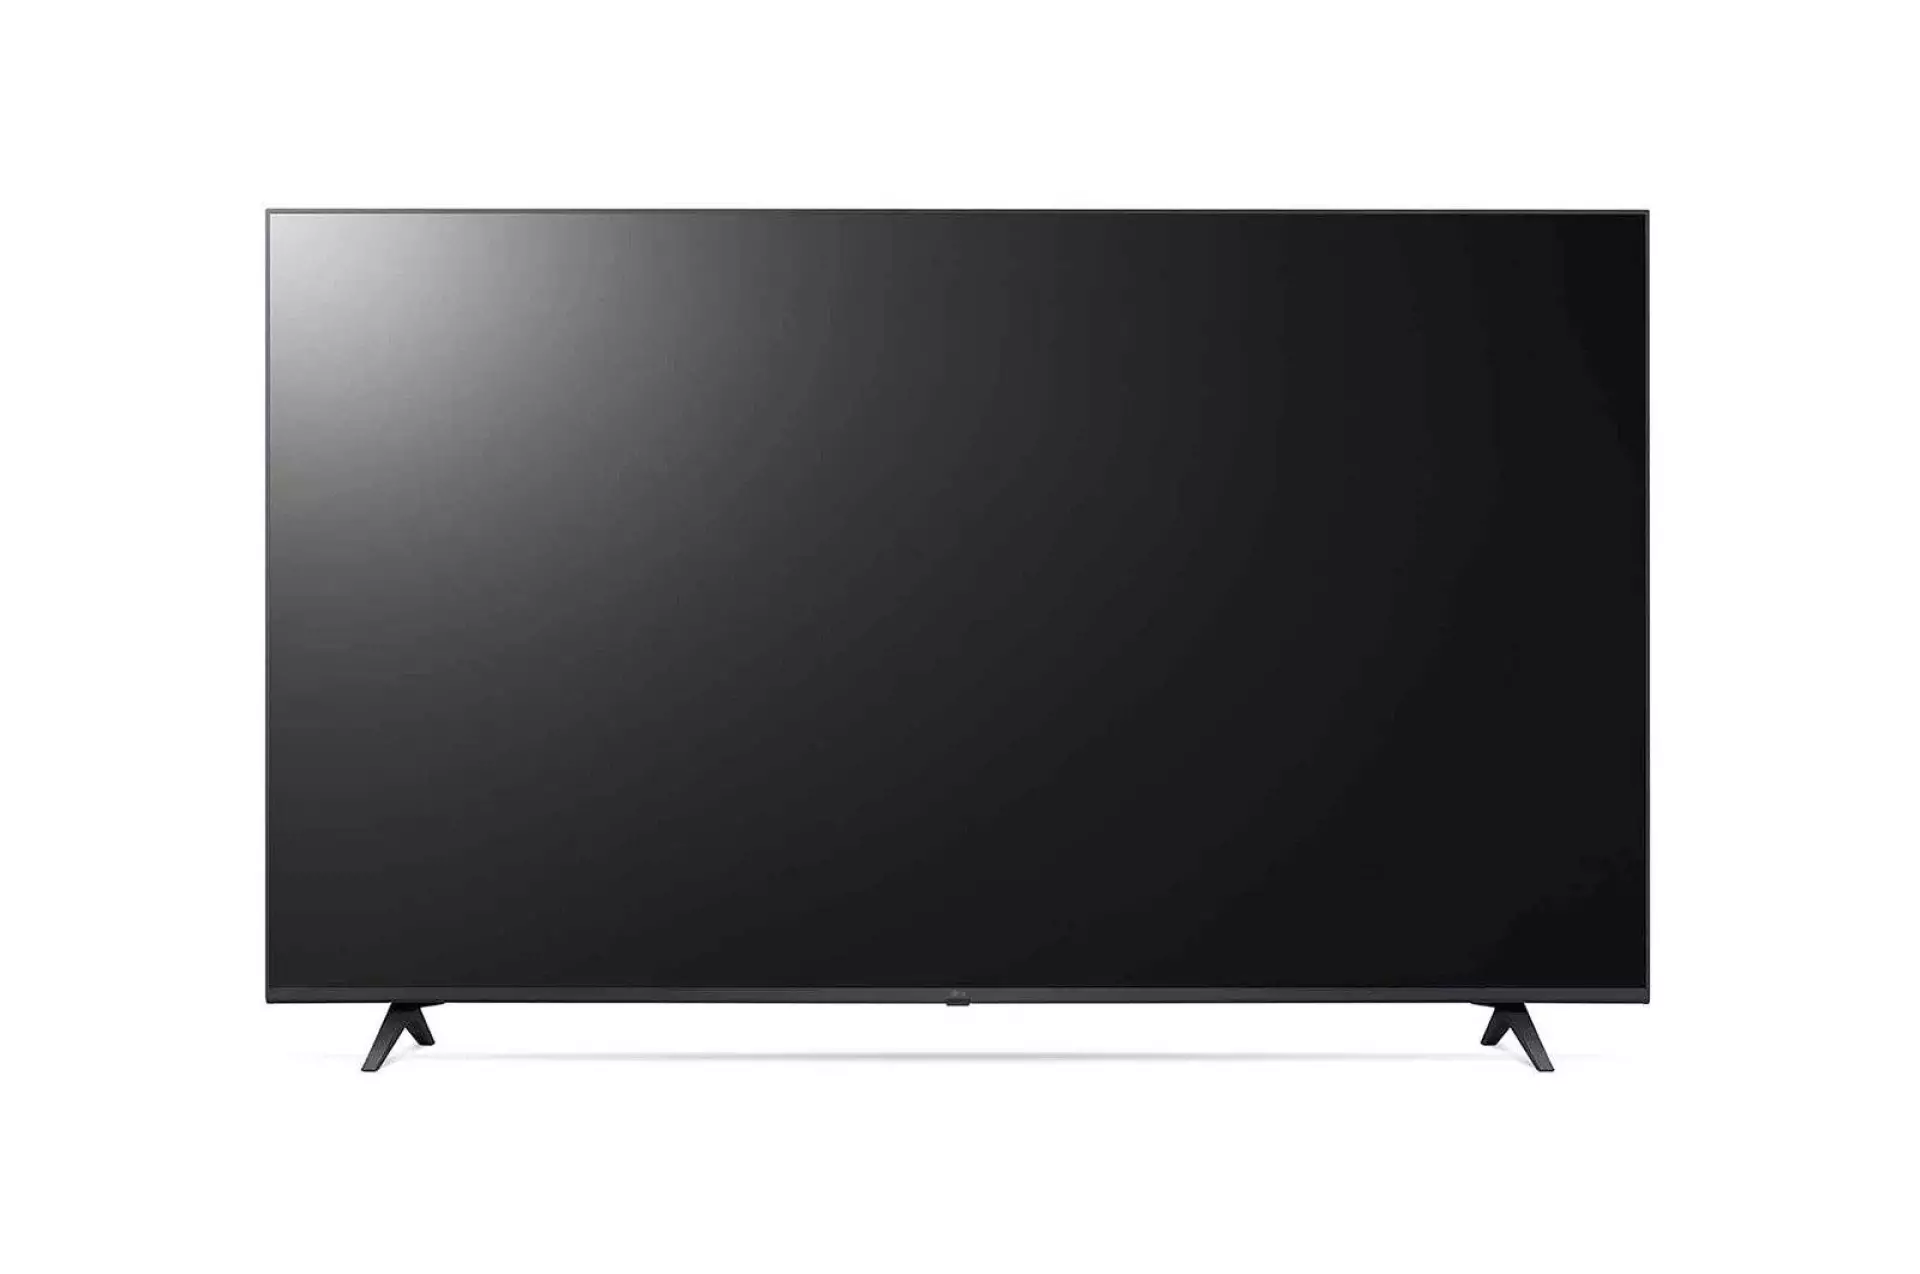 LG TV LED 50UP77003LB